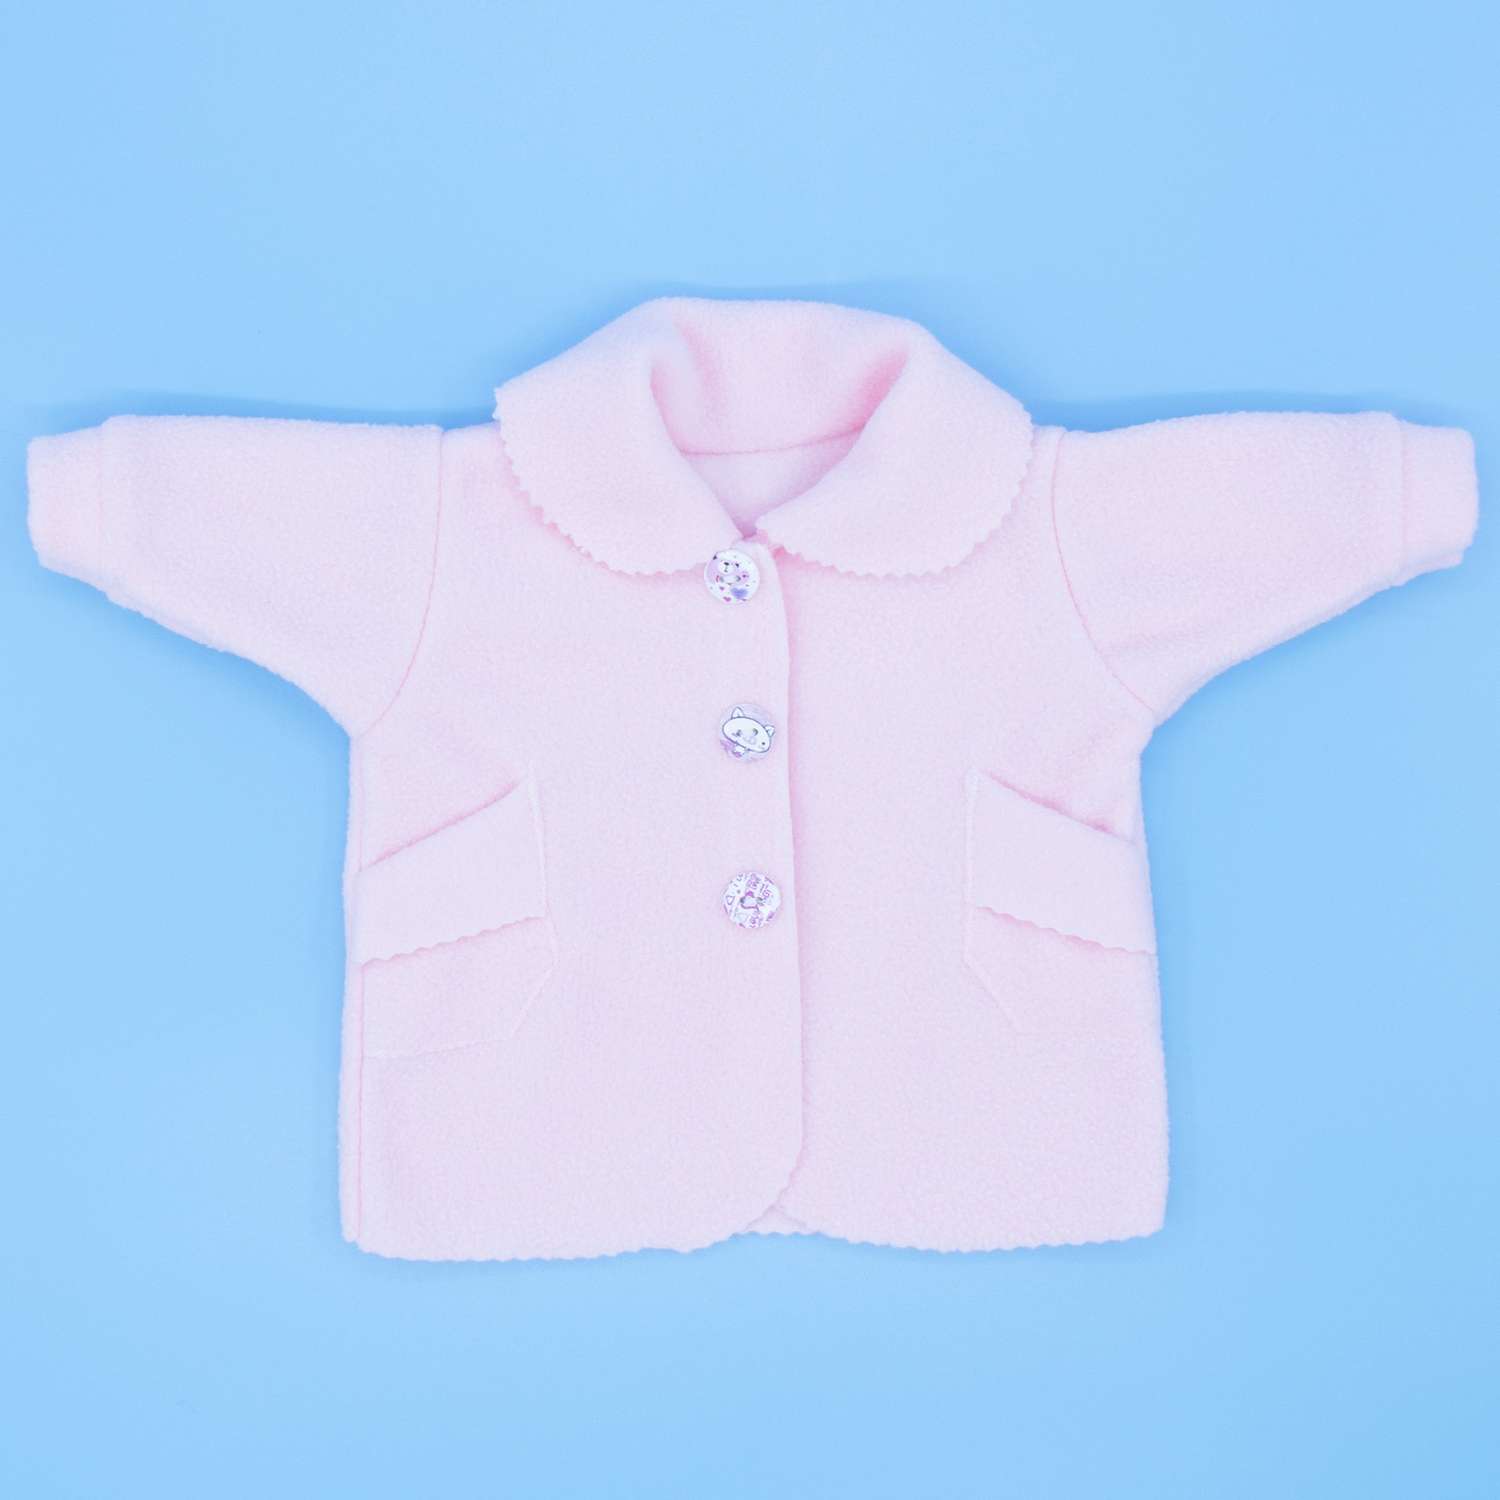 Пальто Модница для пупса 43-48 см 6119 бледно-розовый 6119бледно-розовый - фото 10